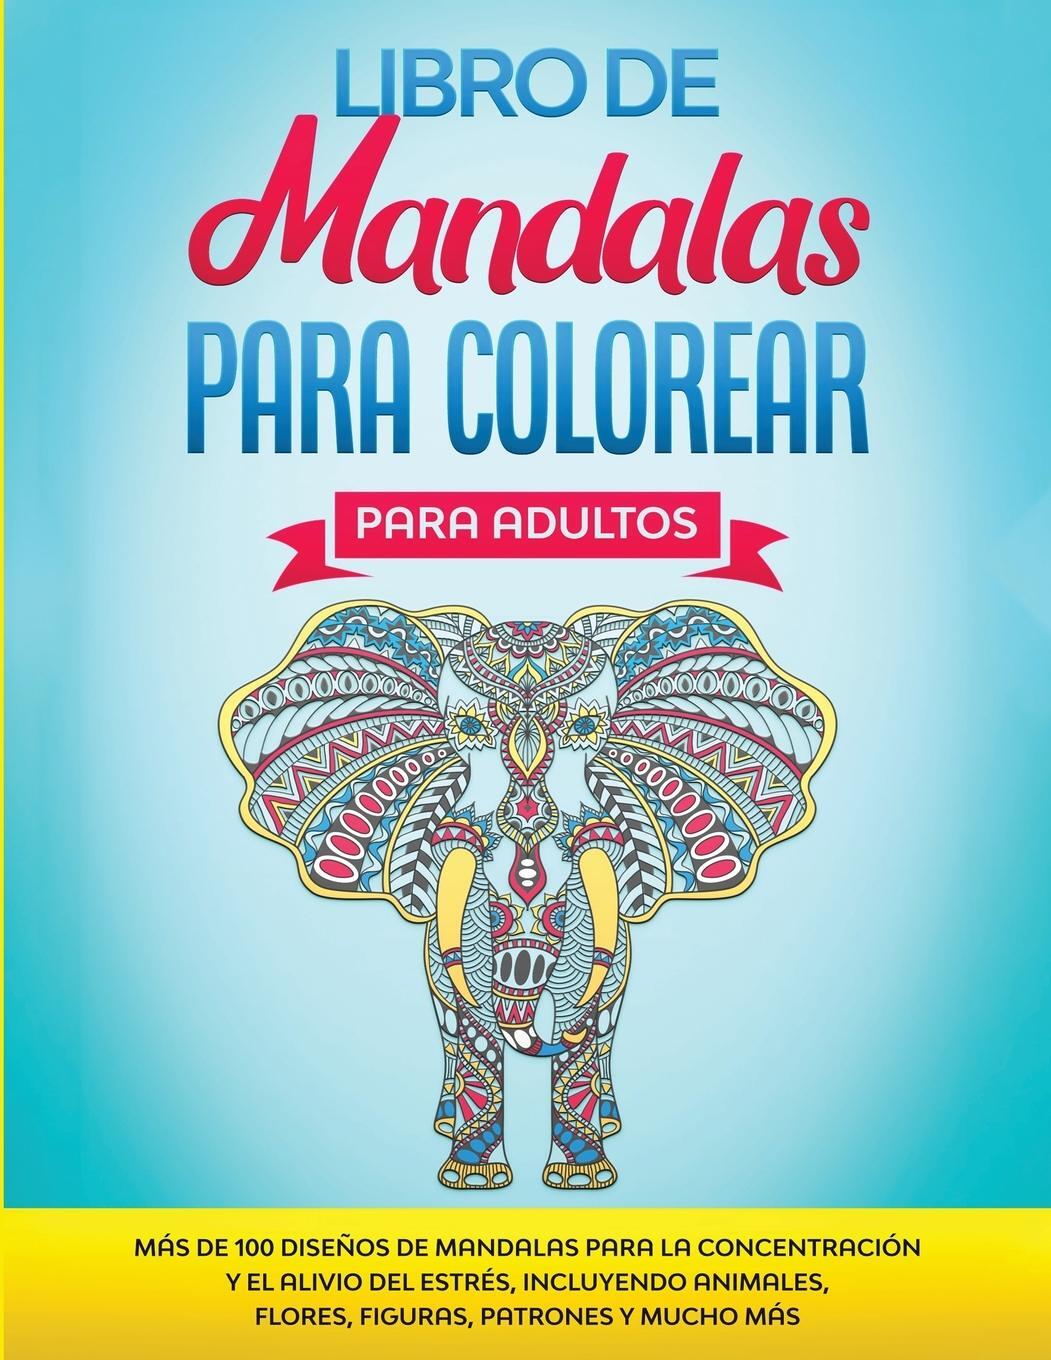 O Alivio de Tensoes Adulto Desenhos Para Colorir: Divertido, Facil e  Relaxante Serie Mandala ( Vol. 2 )